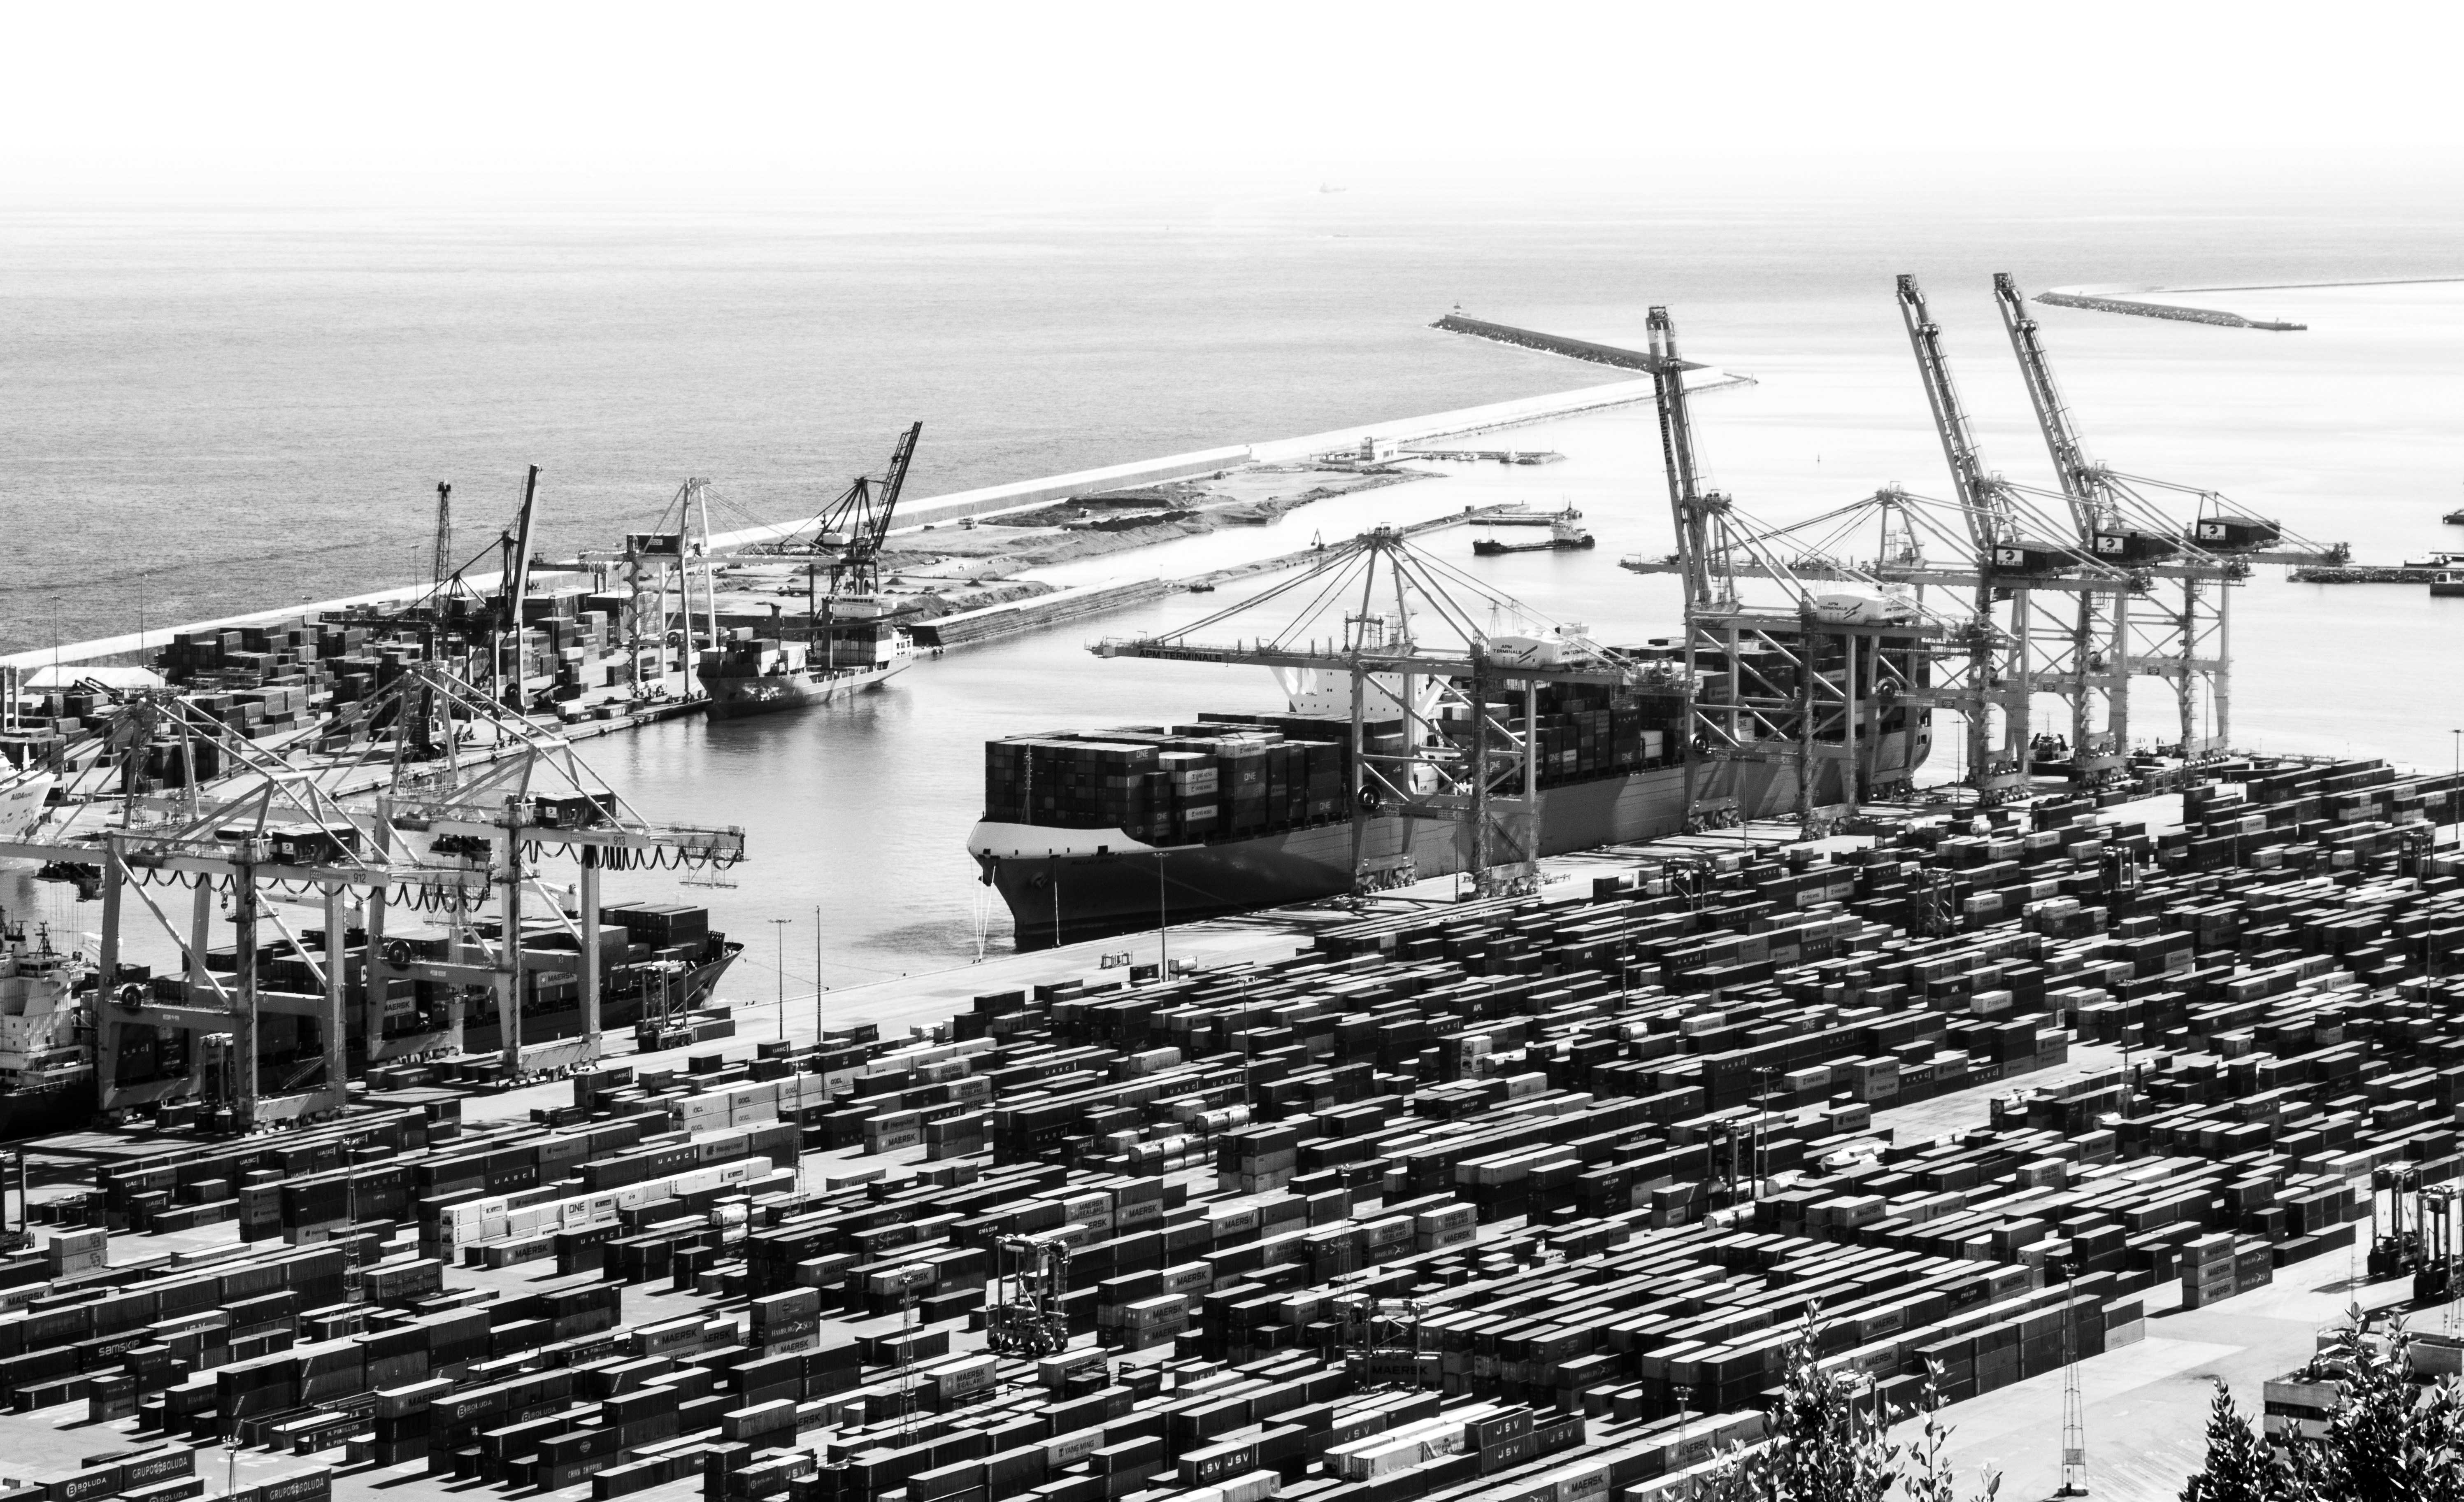 The cargo docks in Barcelona, Spain.